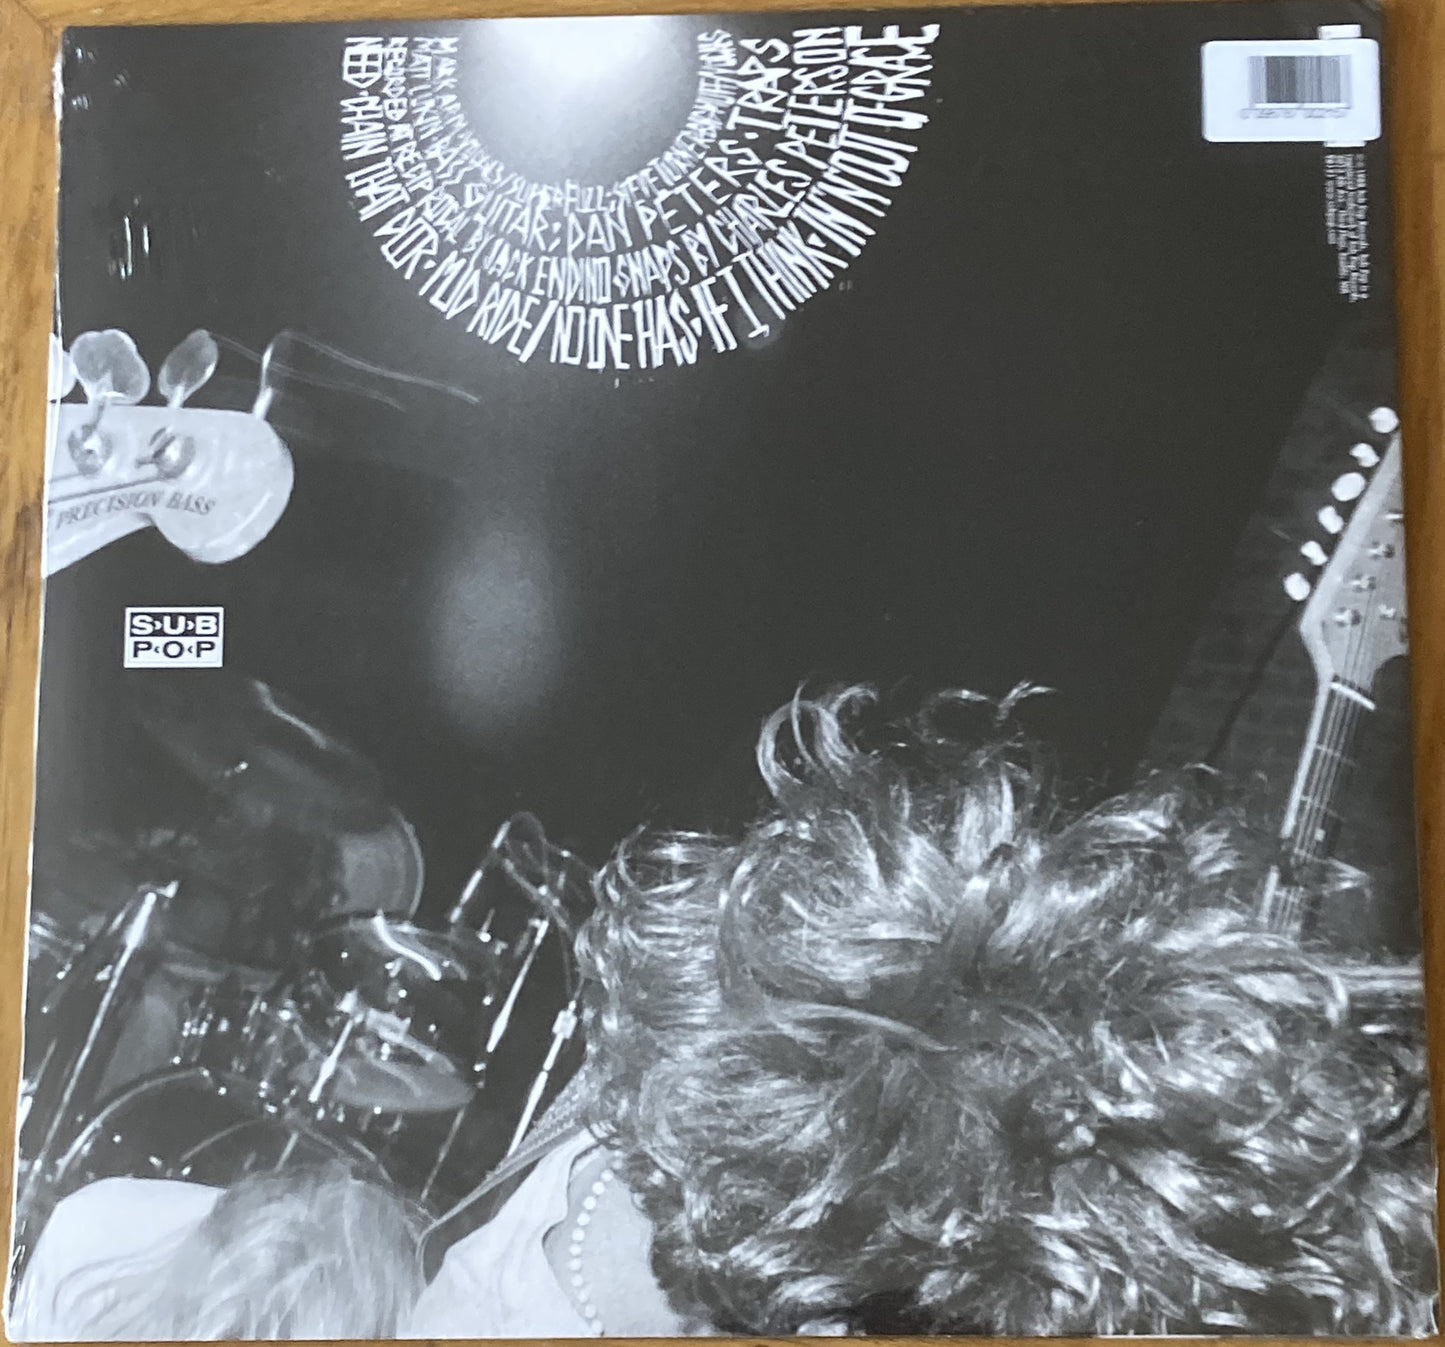 The back of 'Mudhoney - Superfuzz Bigmuff' on vinyl